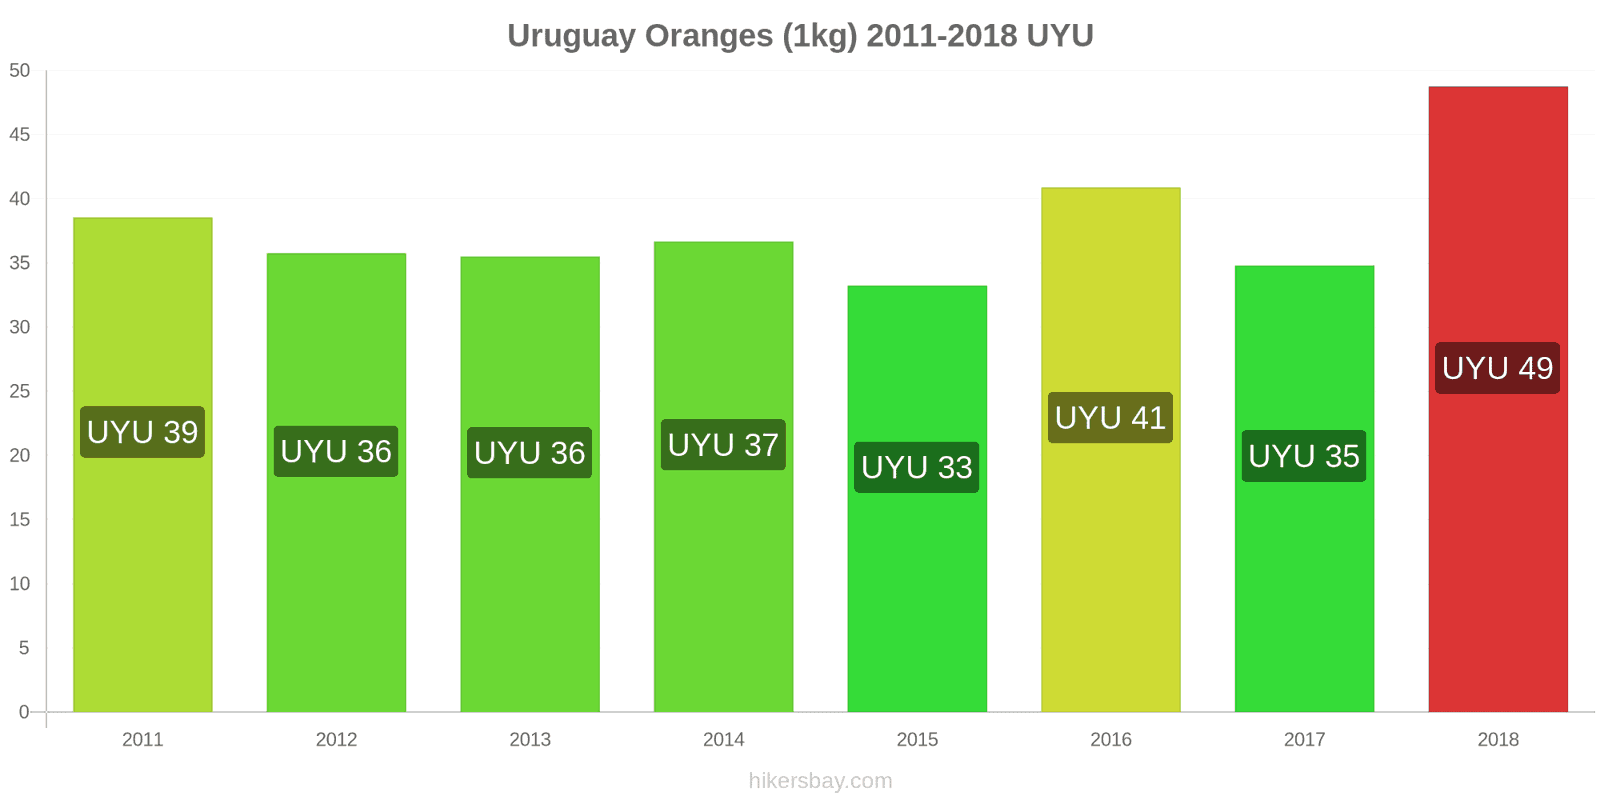 Uruguay price changes Oranges (1kg) hikersbay.com